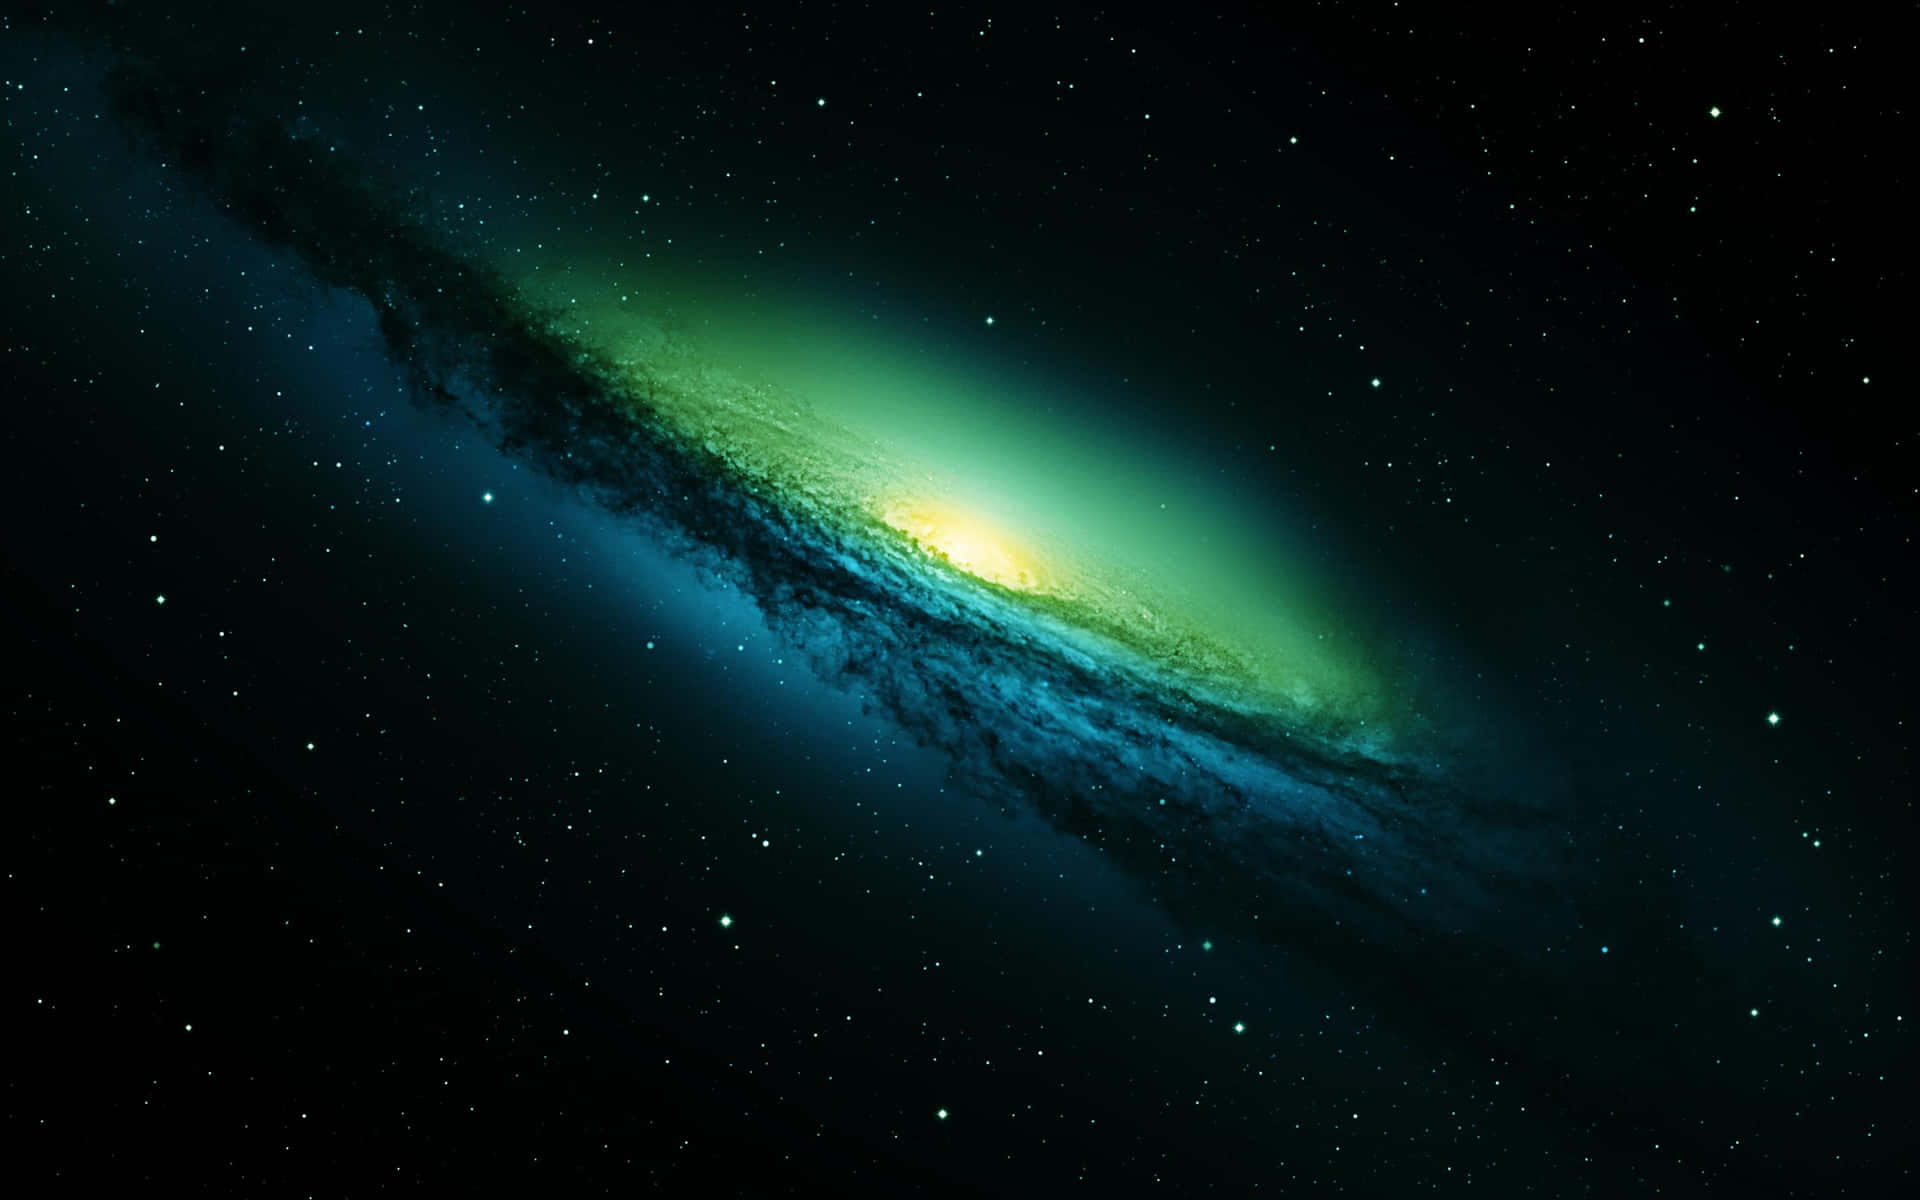 Explore Green Galaxy, a vibrant and intergalactic world! Wallpaper